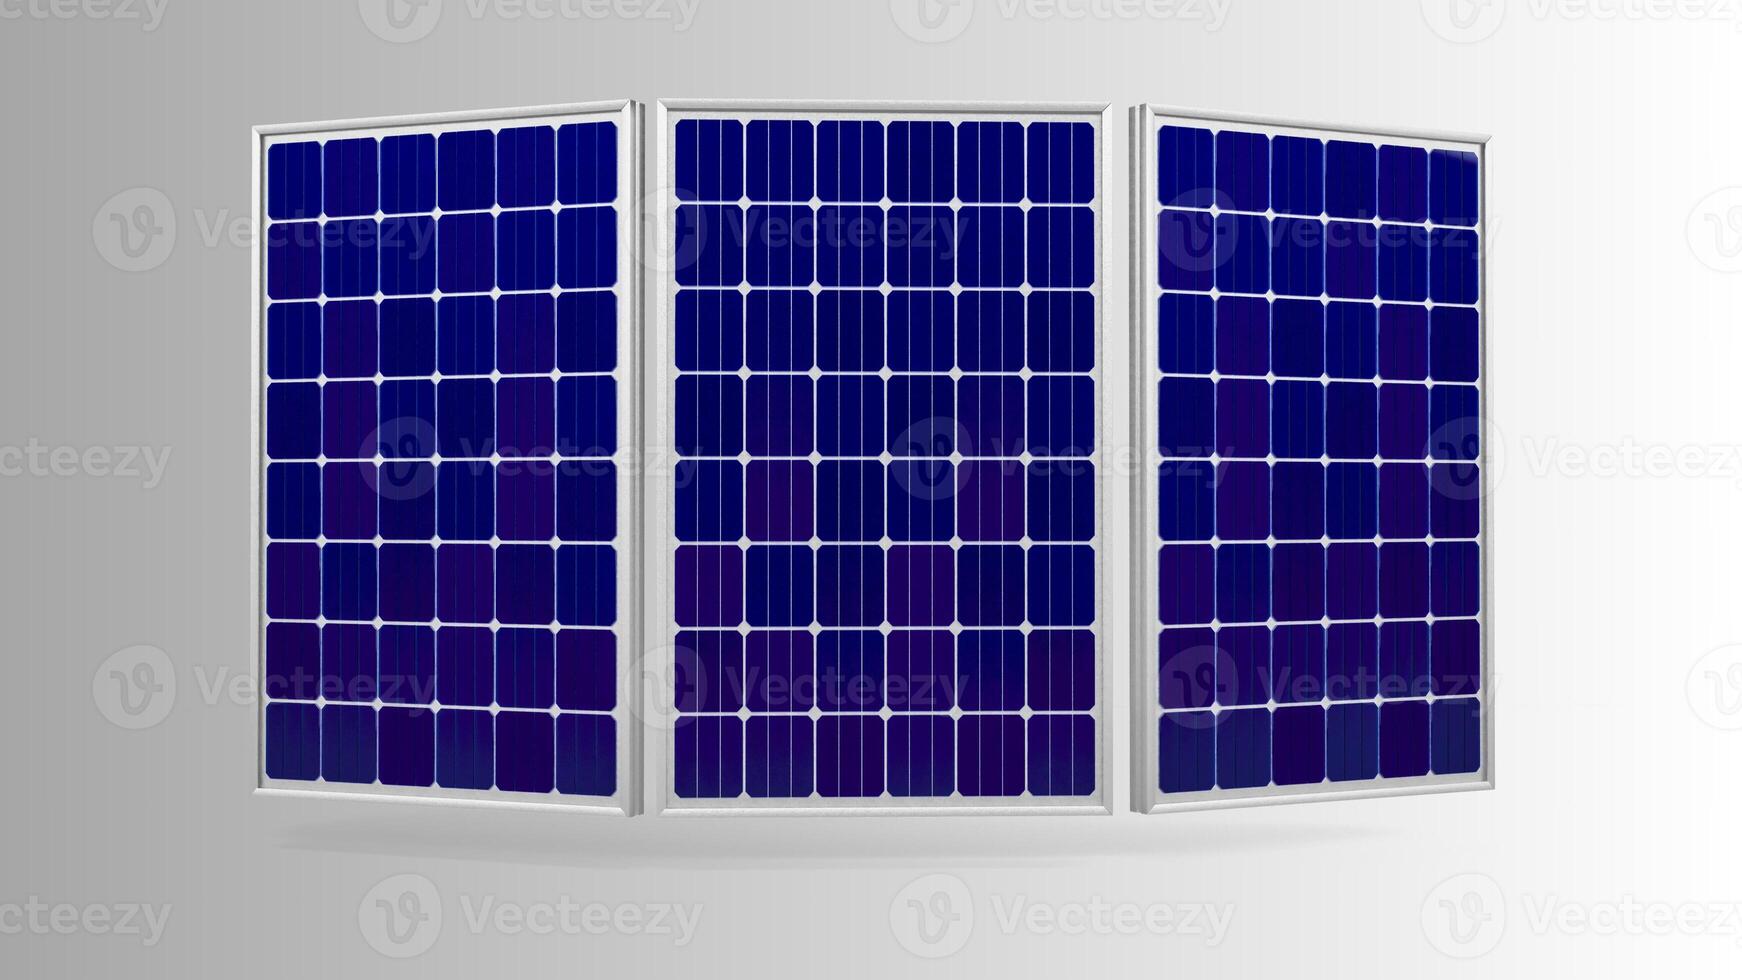 sol- panel isolerat på vit bakgrund med klippning väg. sol- paneler mönster för hållbar energi. förnybar sol- energi. alternativ energi foto